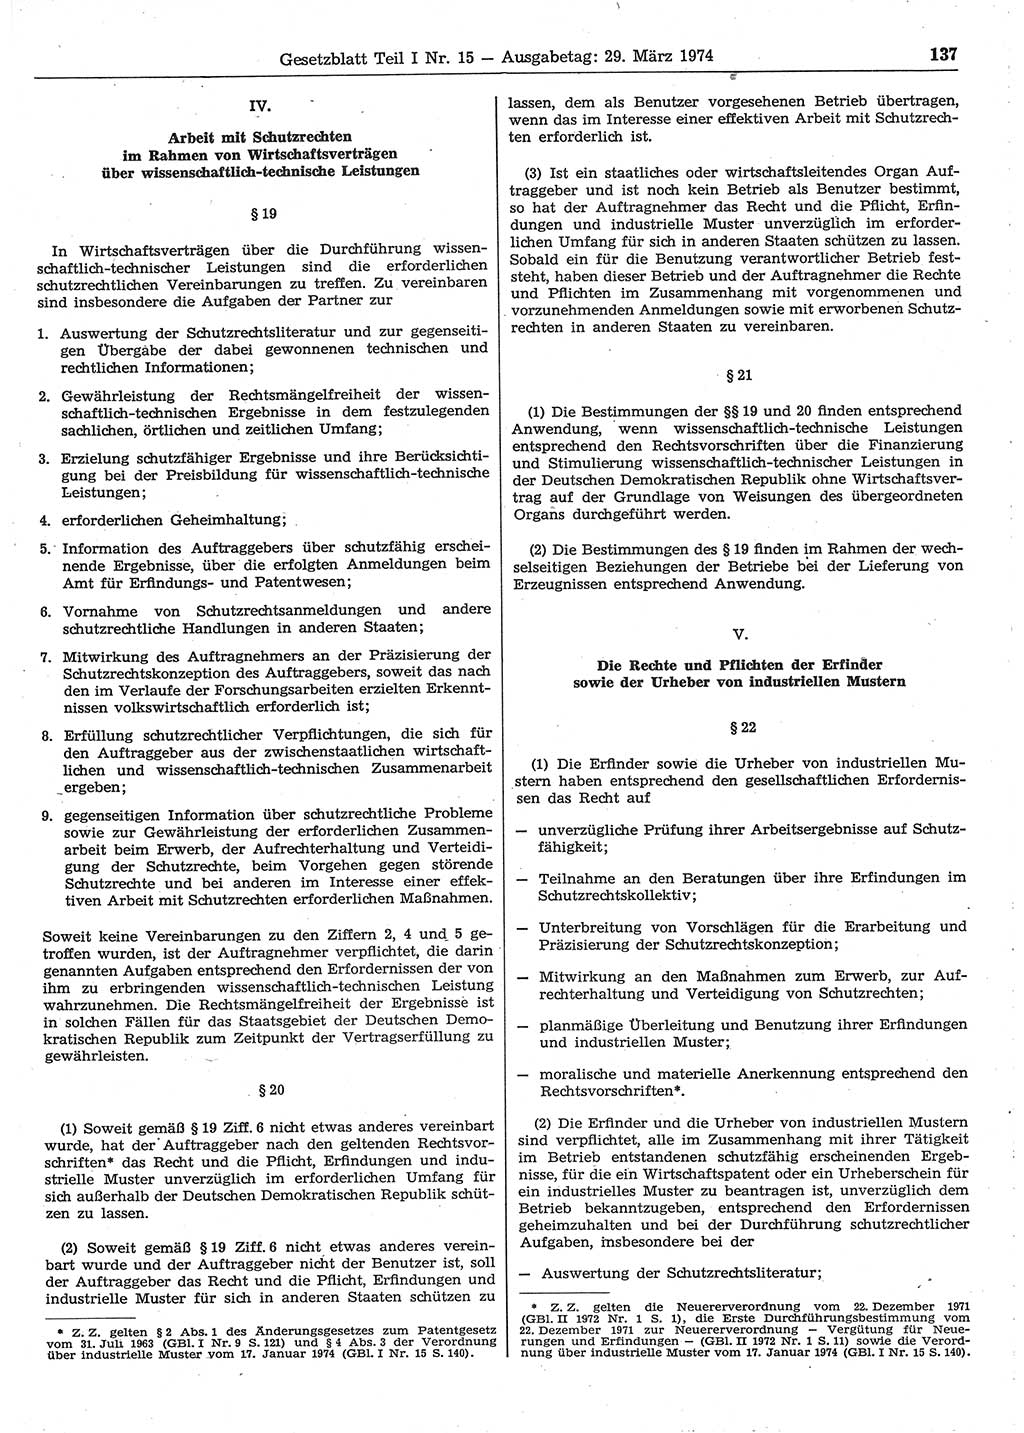 Gesetzblatt (GBl.) der Deutschen Demokratischen Republik (DDR) Teil Ⅰ 1974, Seite 137 (GBl. DDR Ⅰ 1974, S. 137)